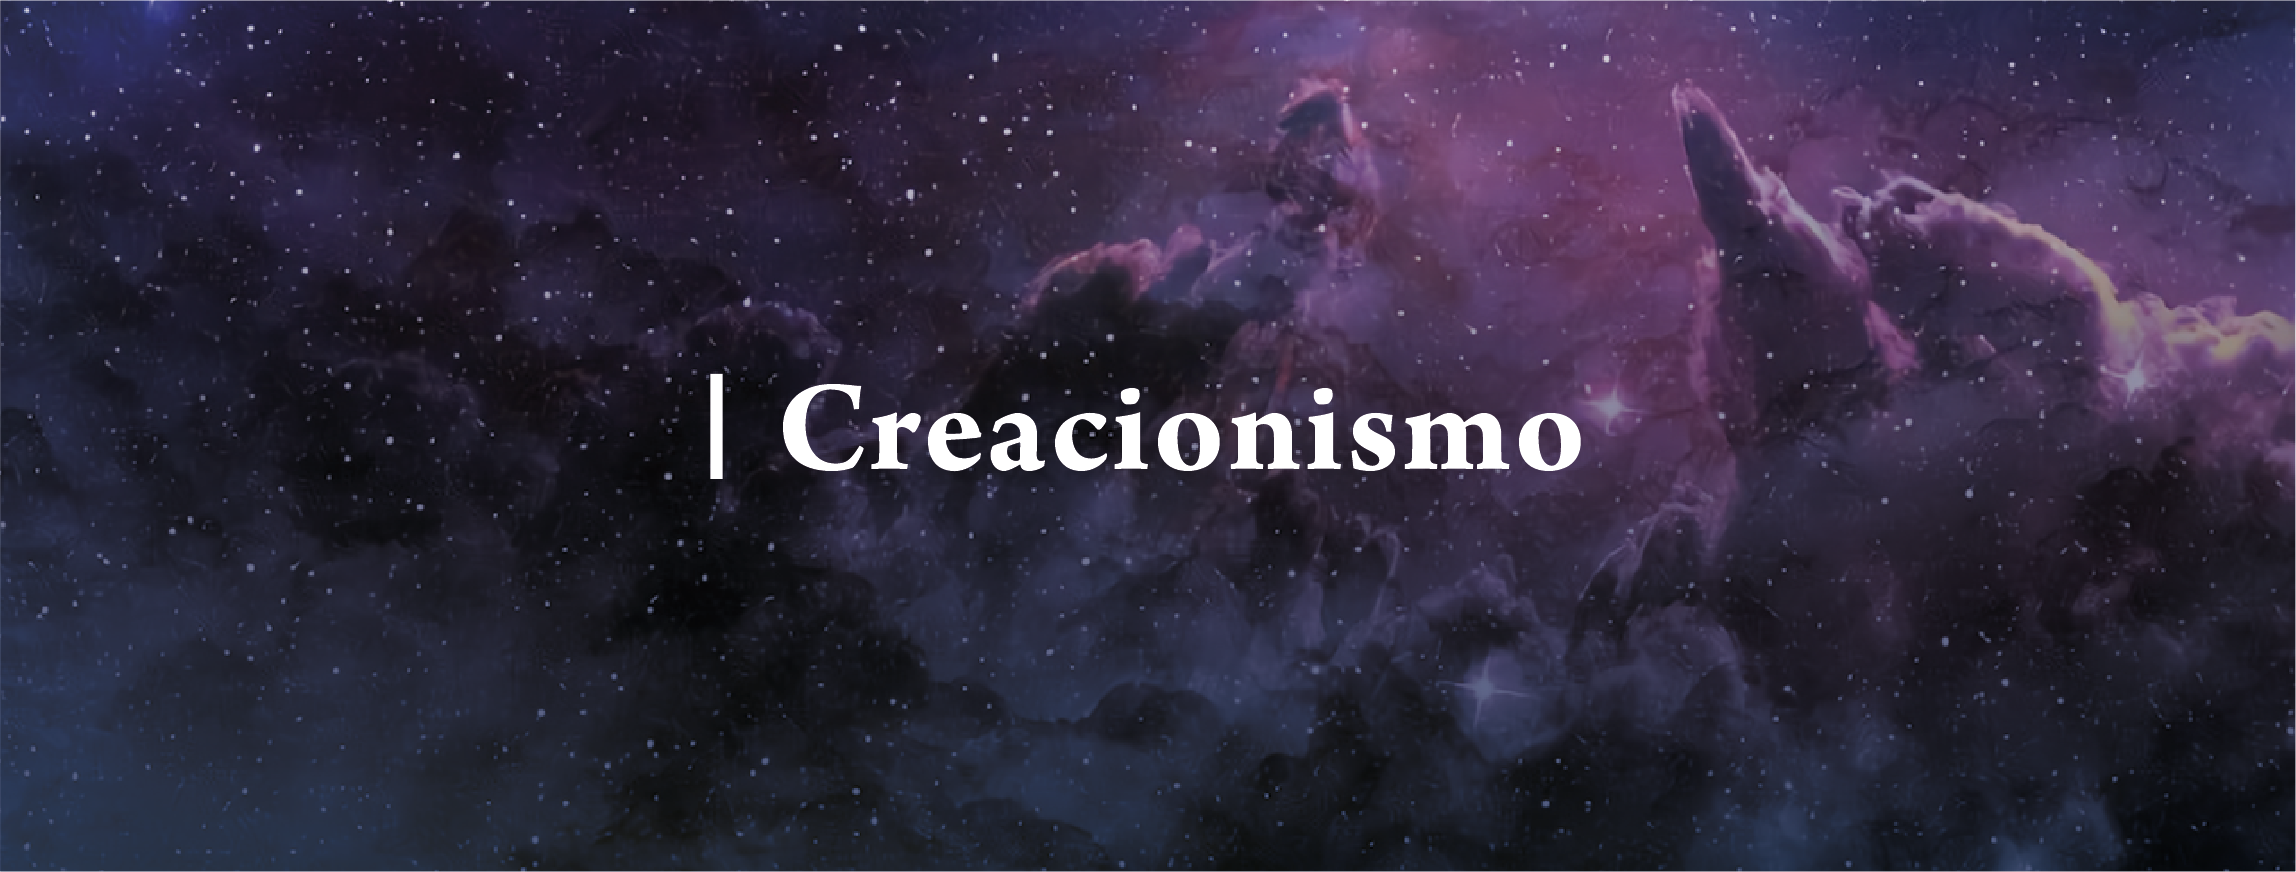 Creacionismo